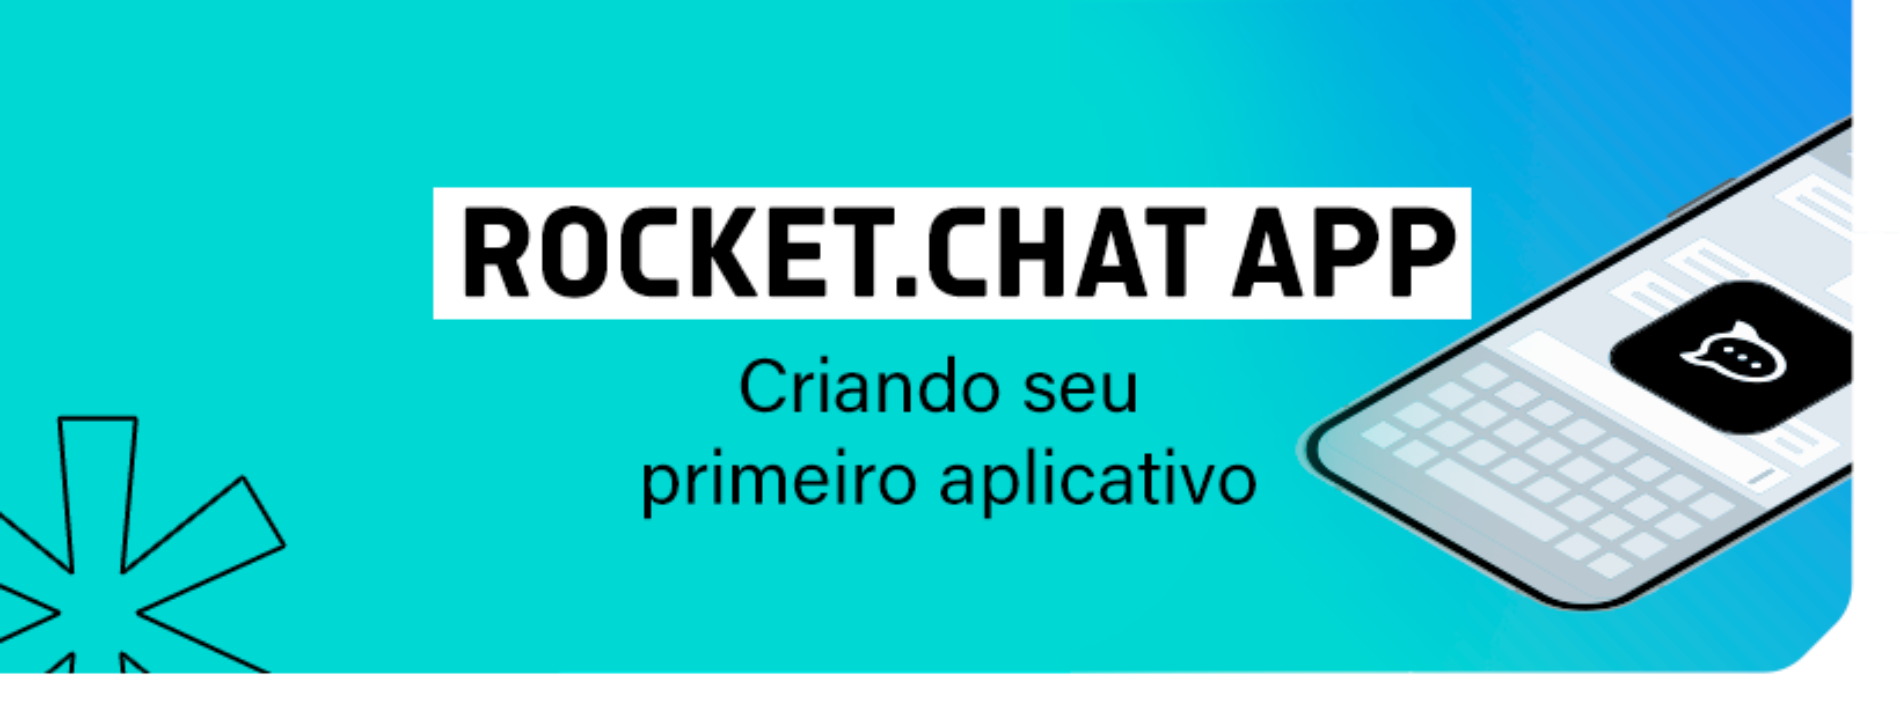 Rocket.Chat App: Criando seu primeiro aplicativo